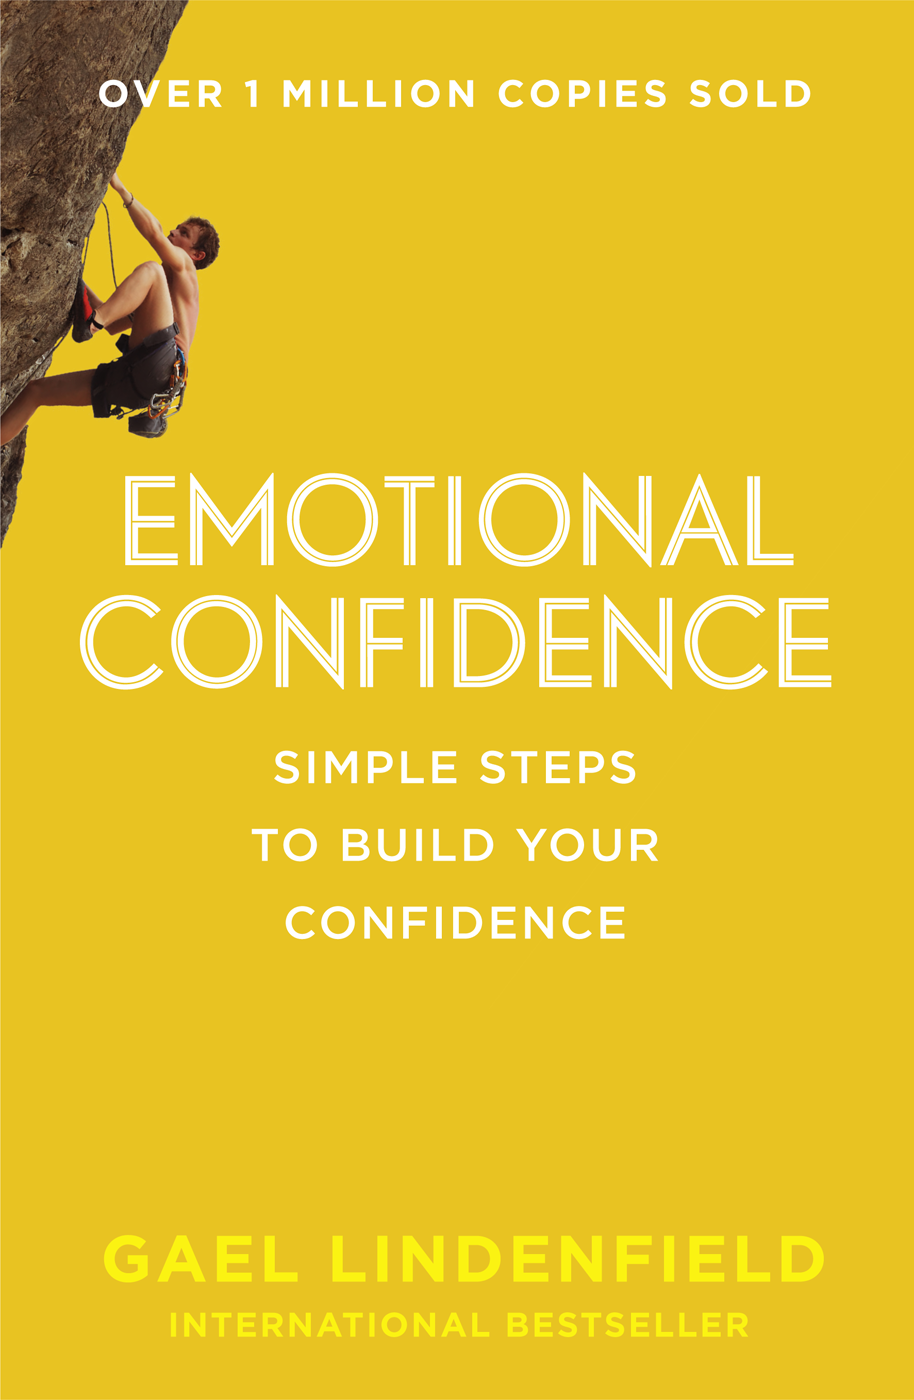 Книга Emotional Confidence: Simple Steps to Build Your Confidence из серии , созданная Gael Lindenfield, может относится к жанру Личностный рост. Стоимость электронной книги Emotional Confidence: Simple Steps to Build Your Confidence с идентификатором 39747345 составляет 160.11 руб.